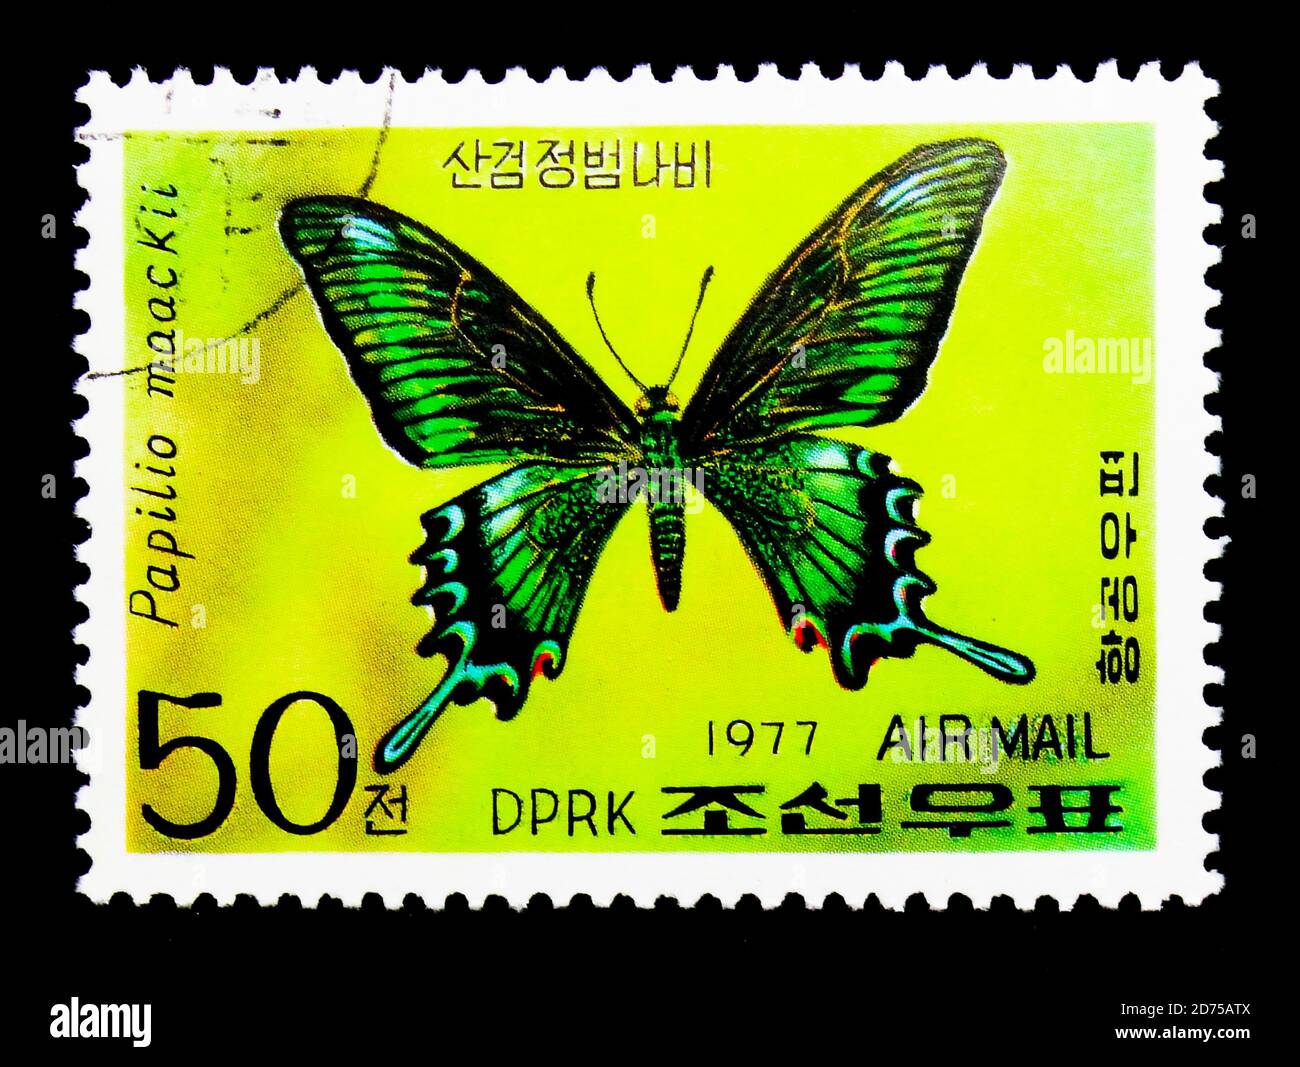 MOSCOU, RUSSIE - le 25 NOVEMBRE 2017 : un timbre imprimé en république populaire démocratique de Corée montre la queue noire alpine (Papilio maackii), Butterf Banque D'Images